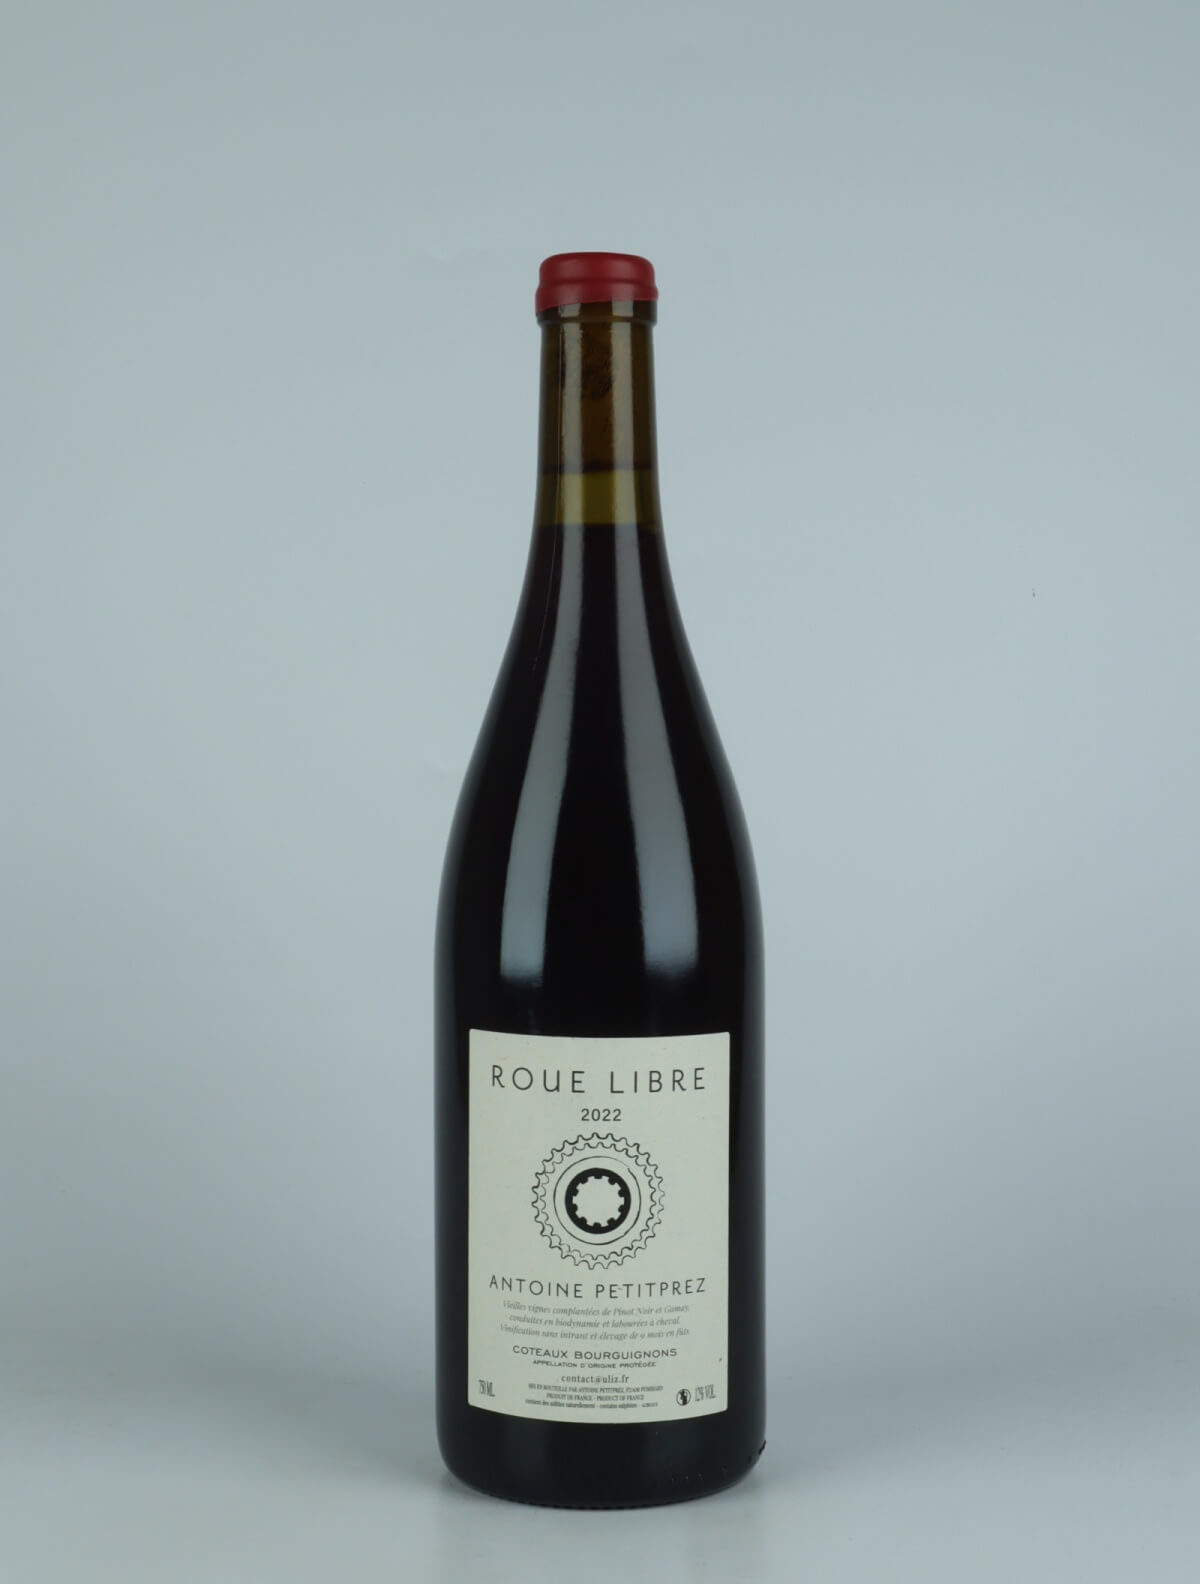 En flaske 2022 Coteaux Bourguignons - Roue Libre Rødvin fra Antoine Petitprez, Bourgogne i Frankrig